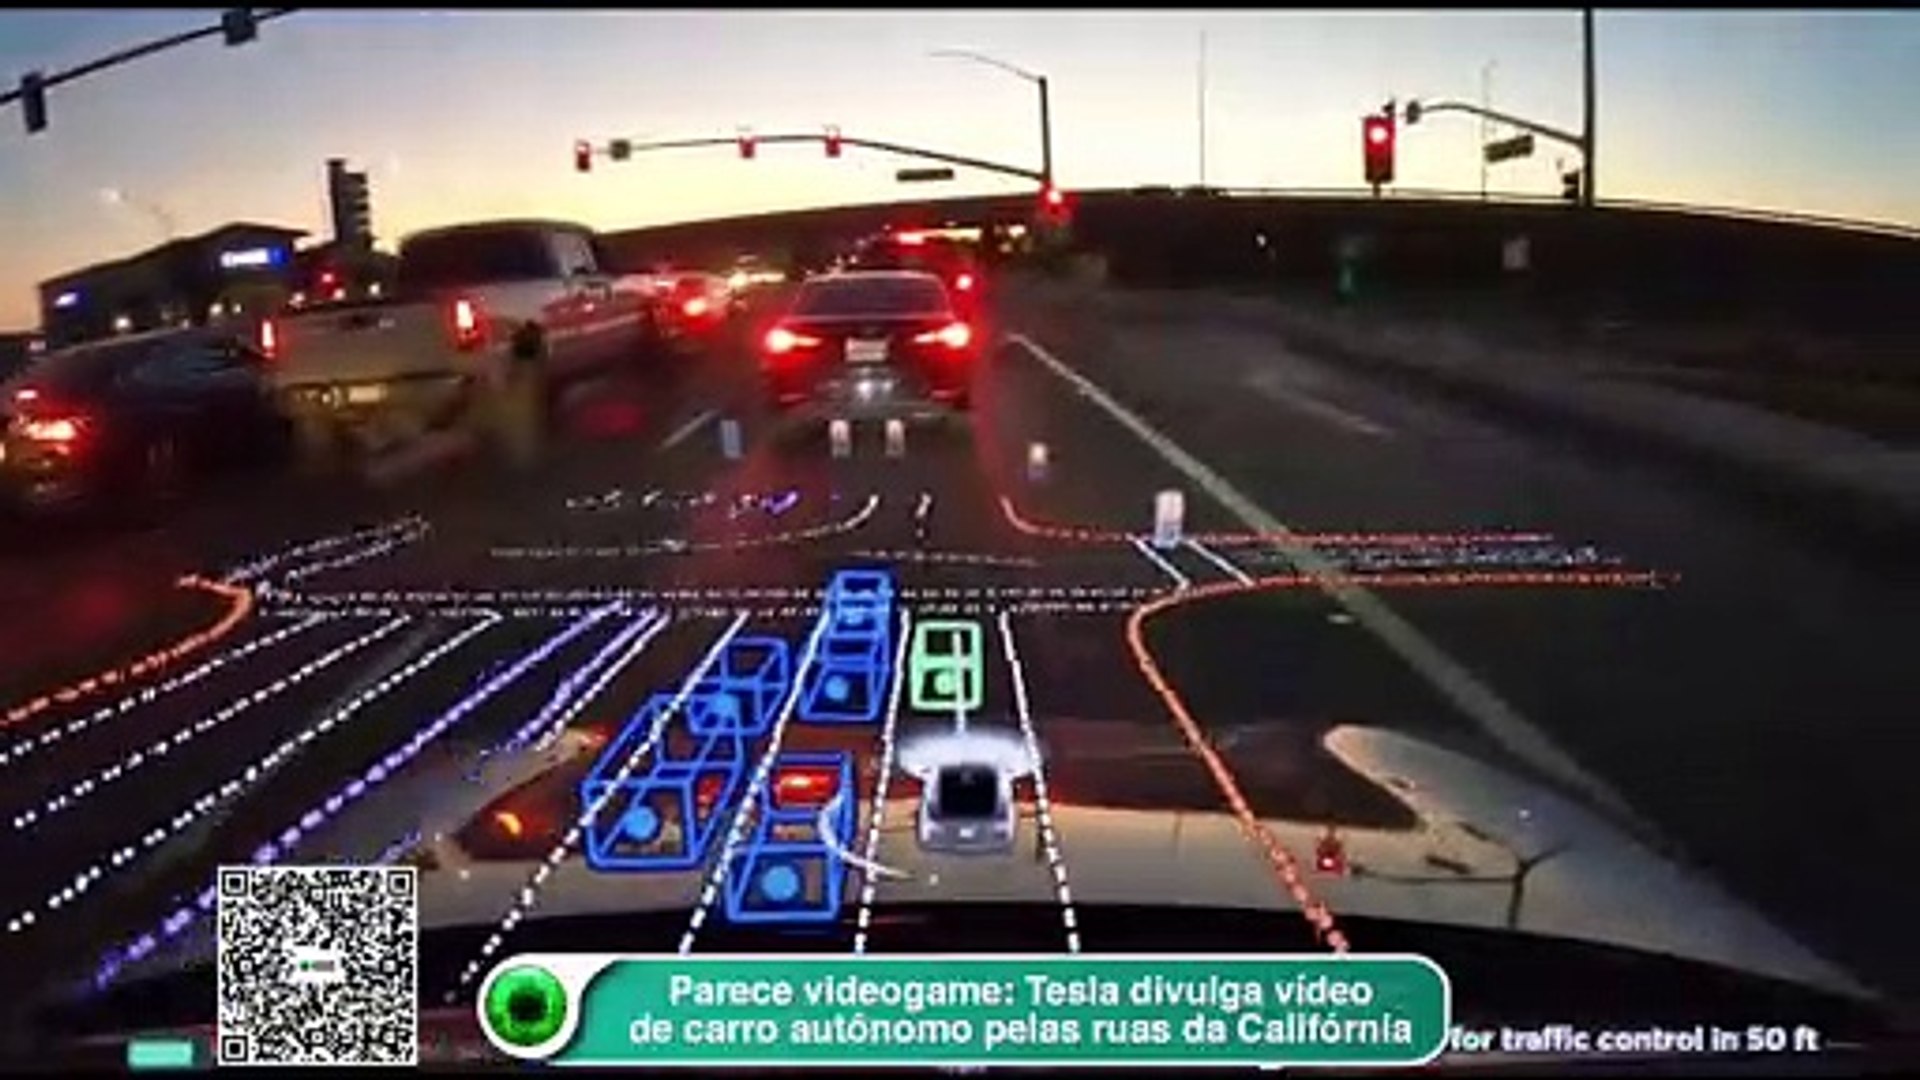 Parece videogame: Tesla divulga vídeo de carro autônomo pelas ruas da Califórnia